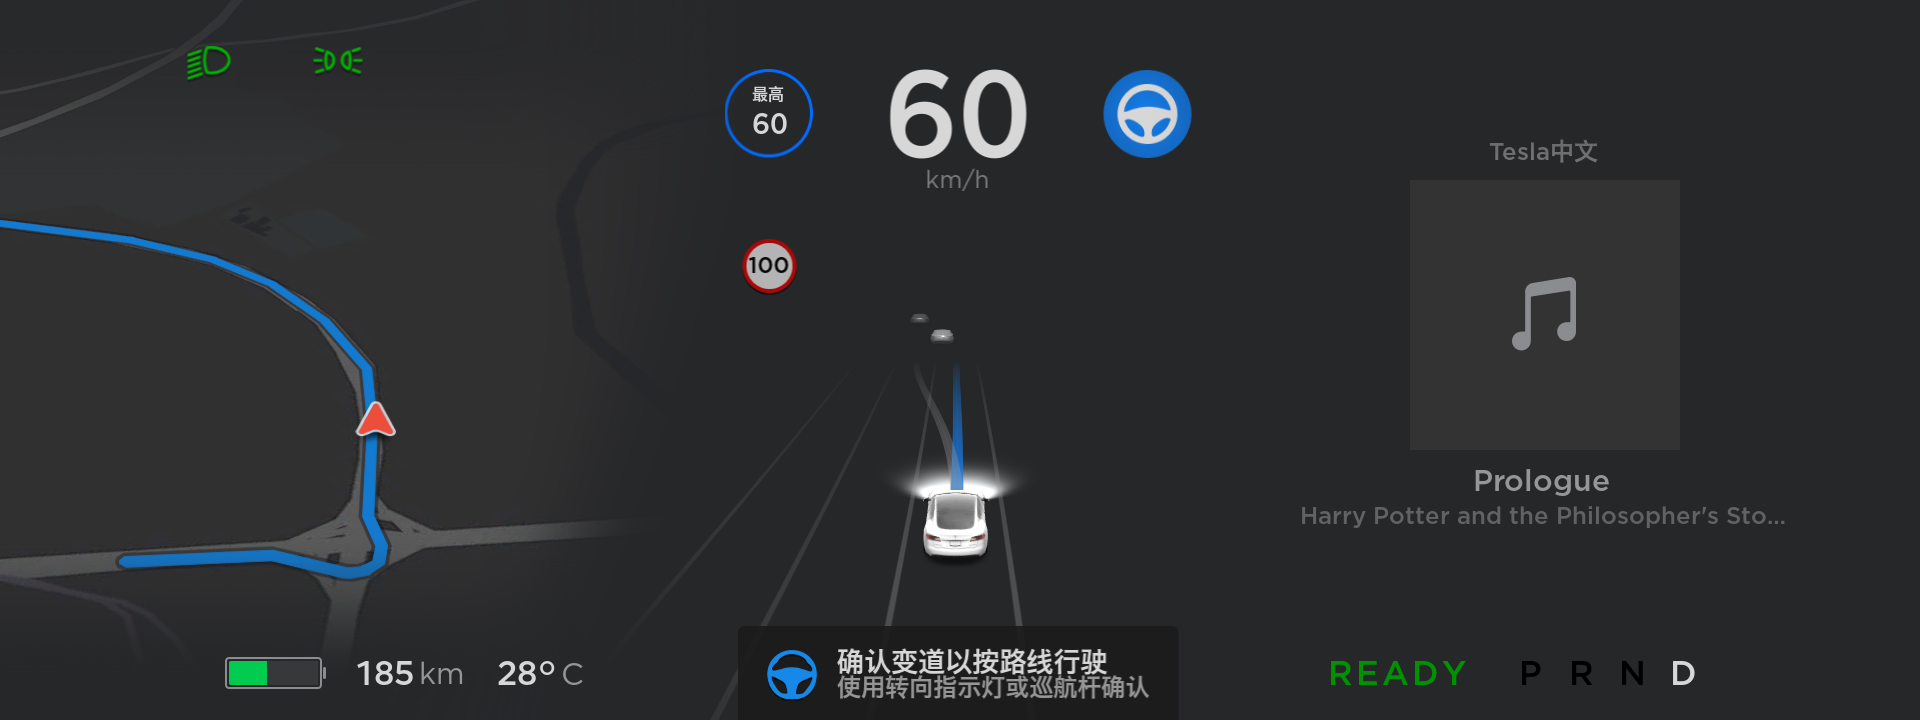 7-特斯拉在中国首次正式推出自动辅助驾驶导航功能.png